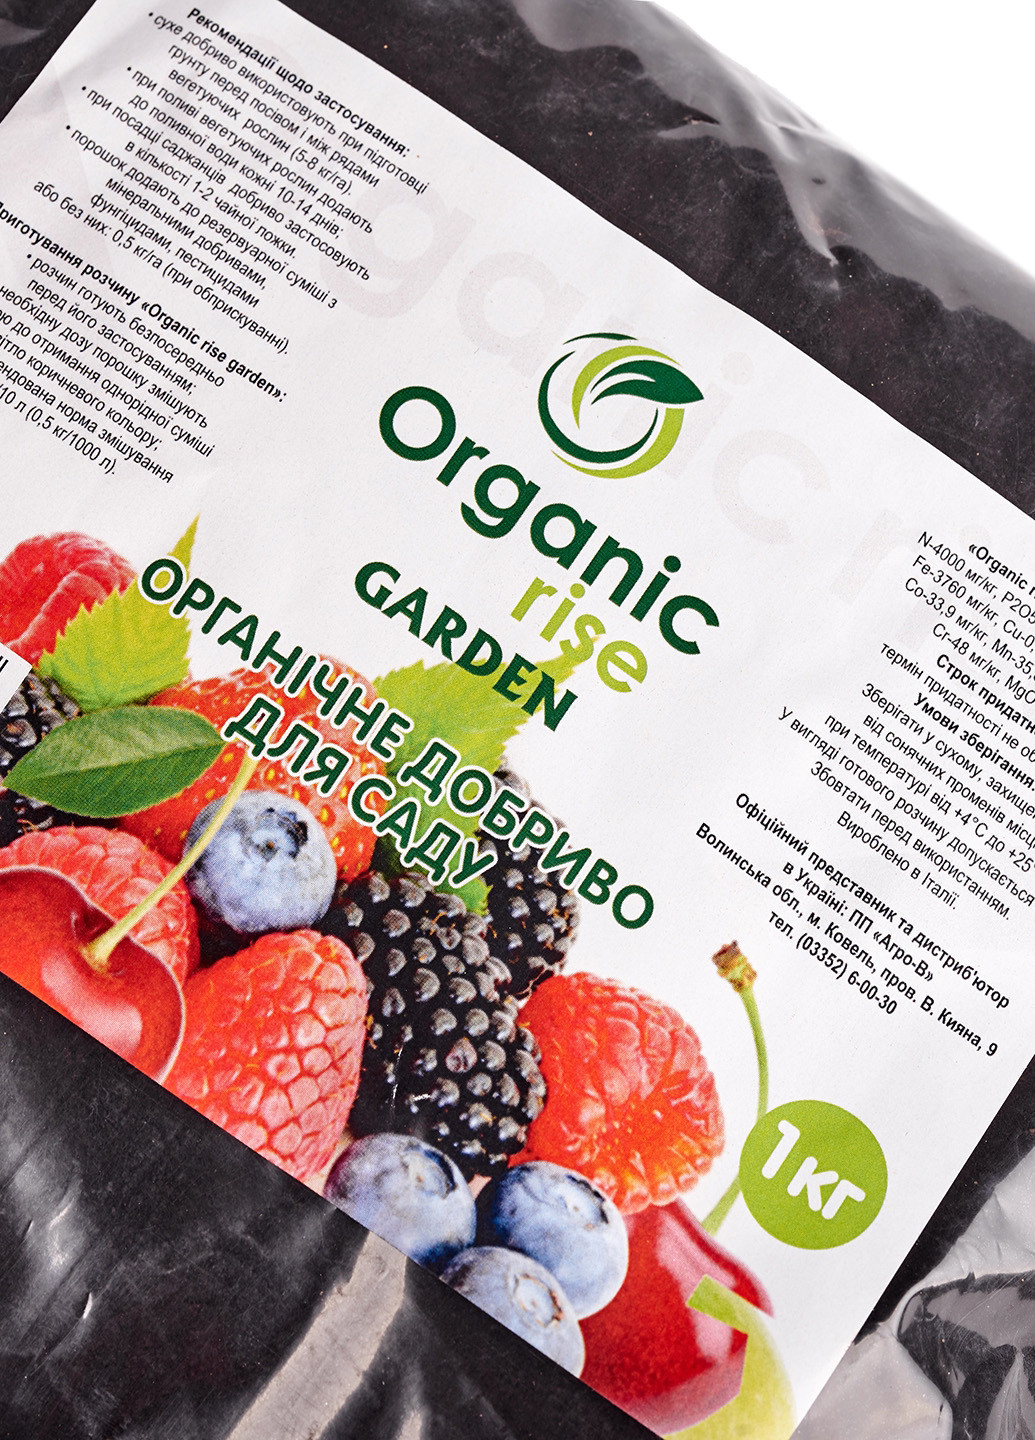 Добриво для дерев фруктових, плодових, хвойних, 1 кг Organic Rise (190167426)